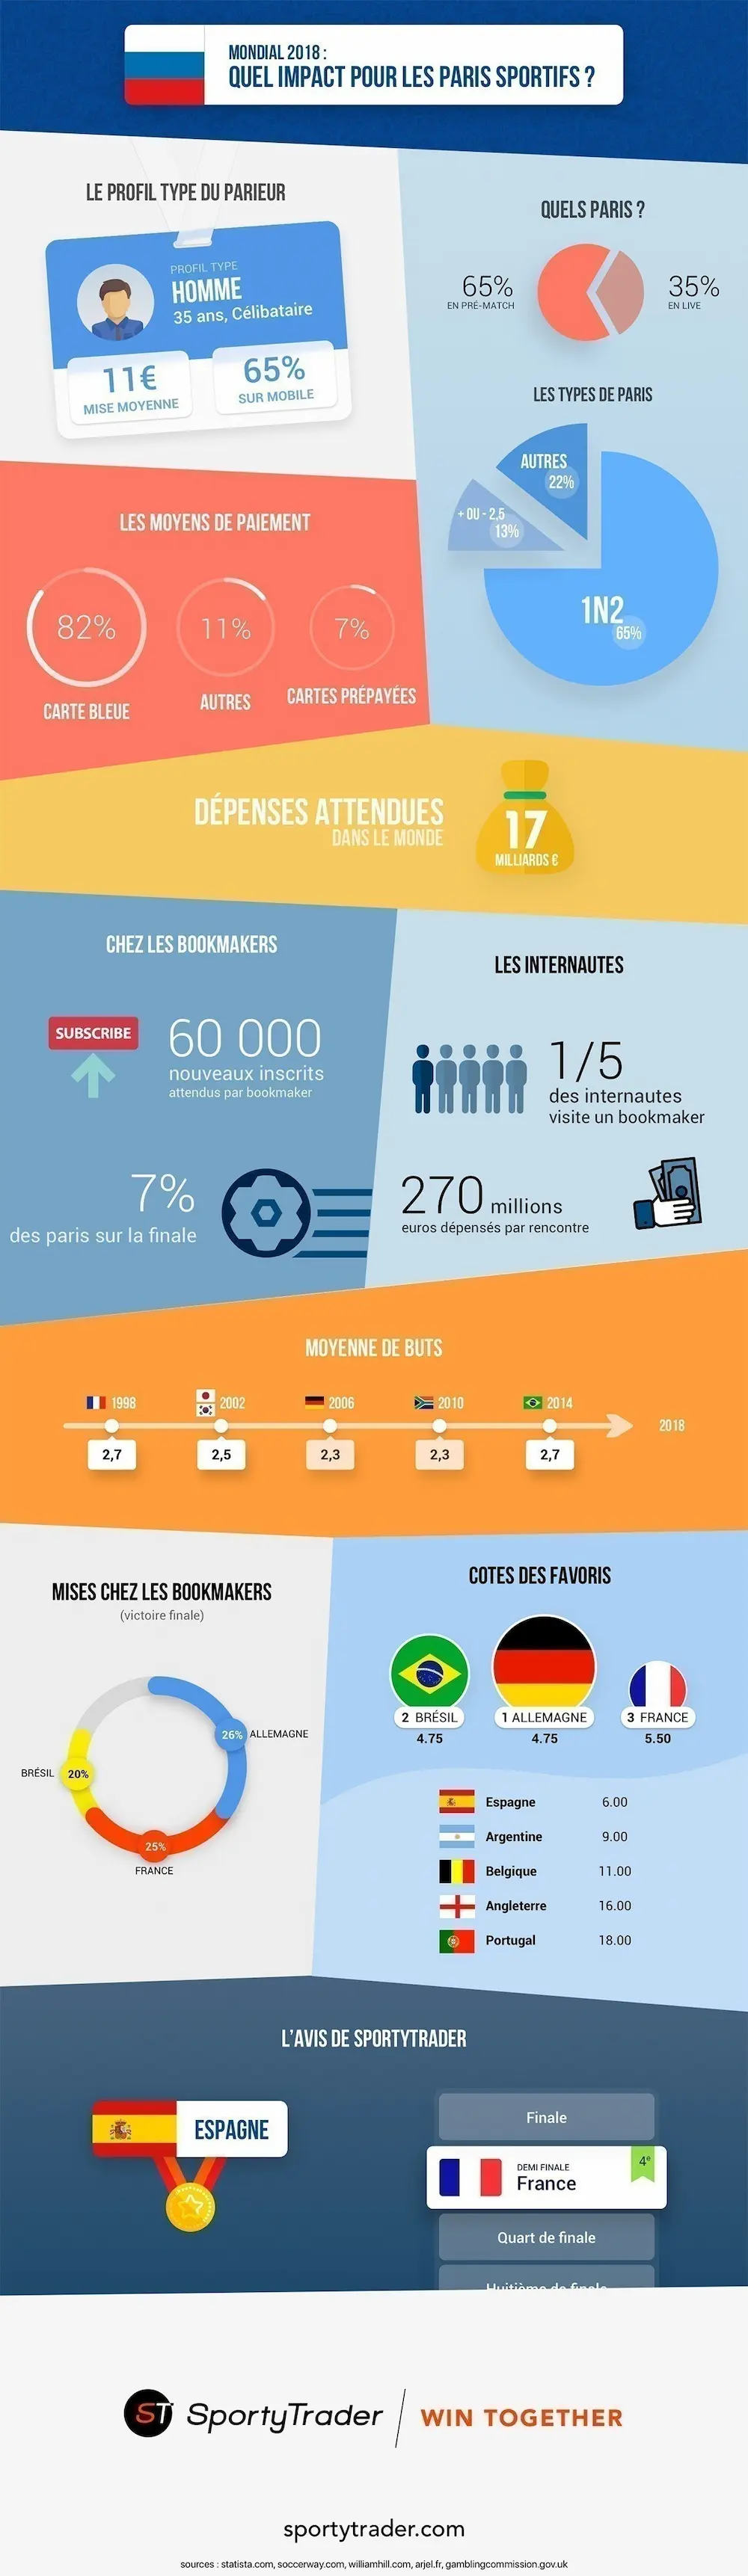 Infographie Statistique Coupe du Monde